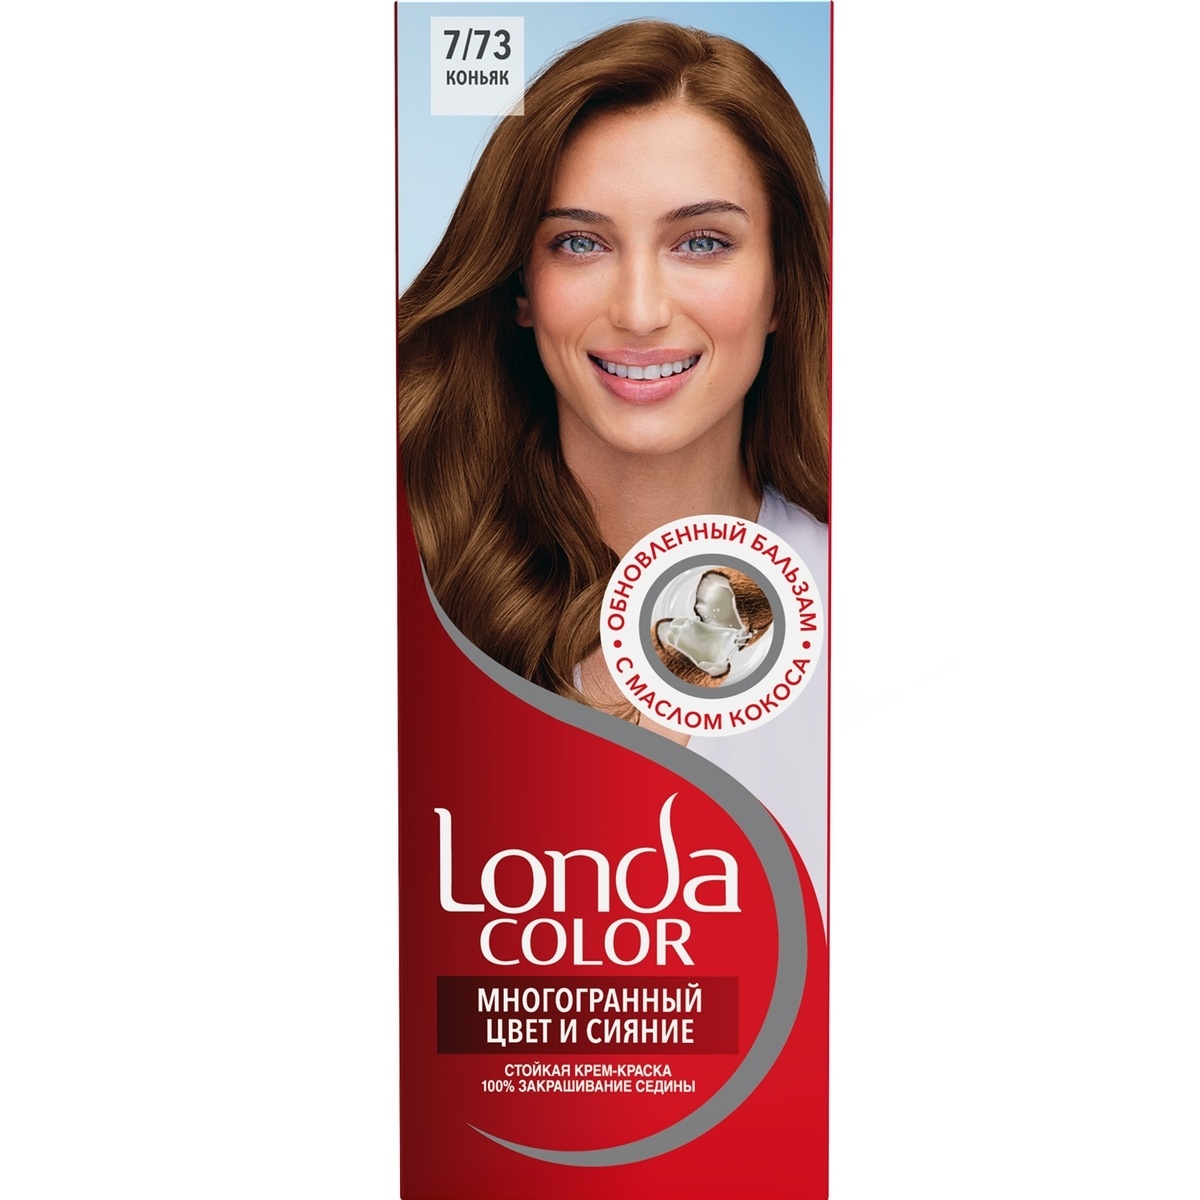 Londa крем-краска для волос стойкая 17 светло-русый